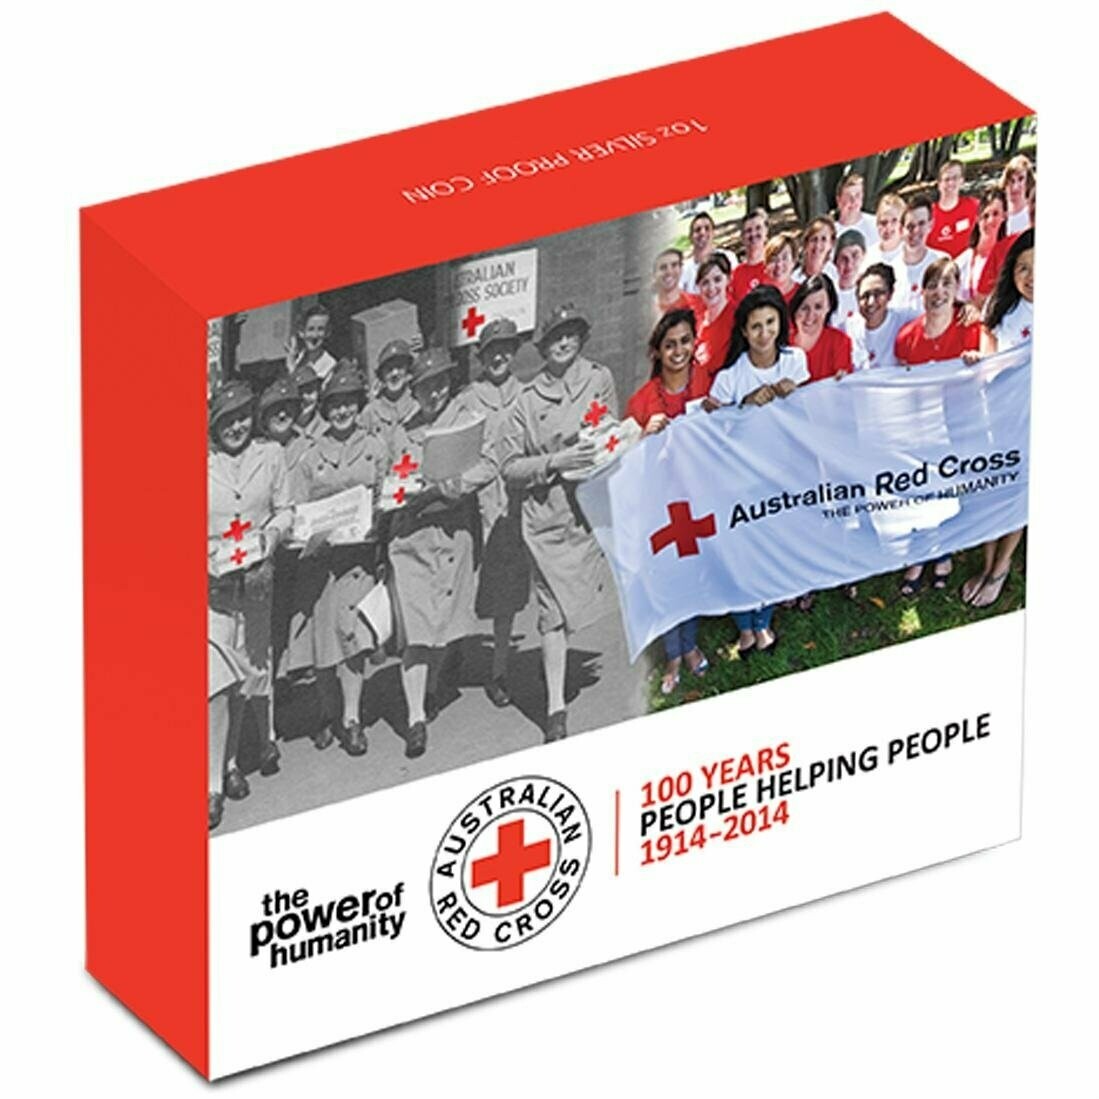 2014 Australia Red Cross 100th Anniversary $1 Silver Proof 1oz Coin Box Coa